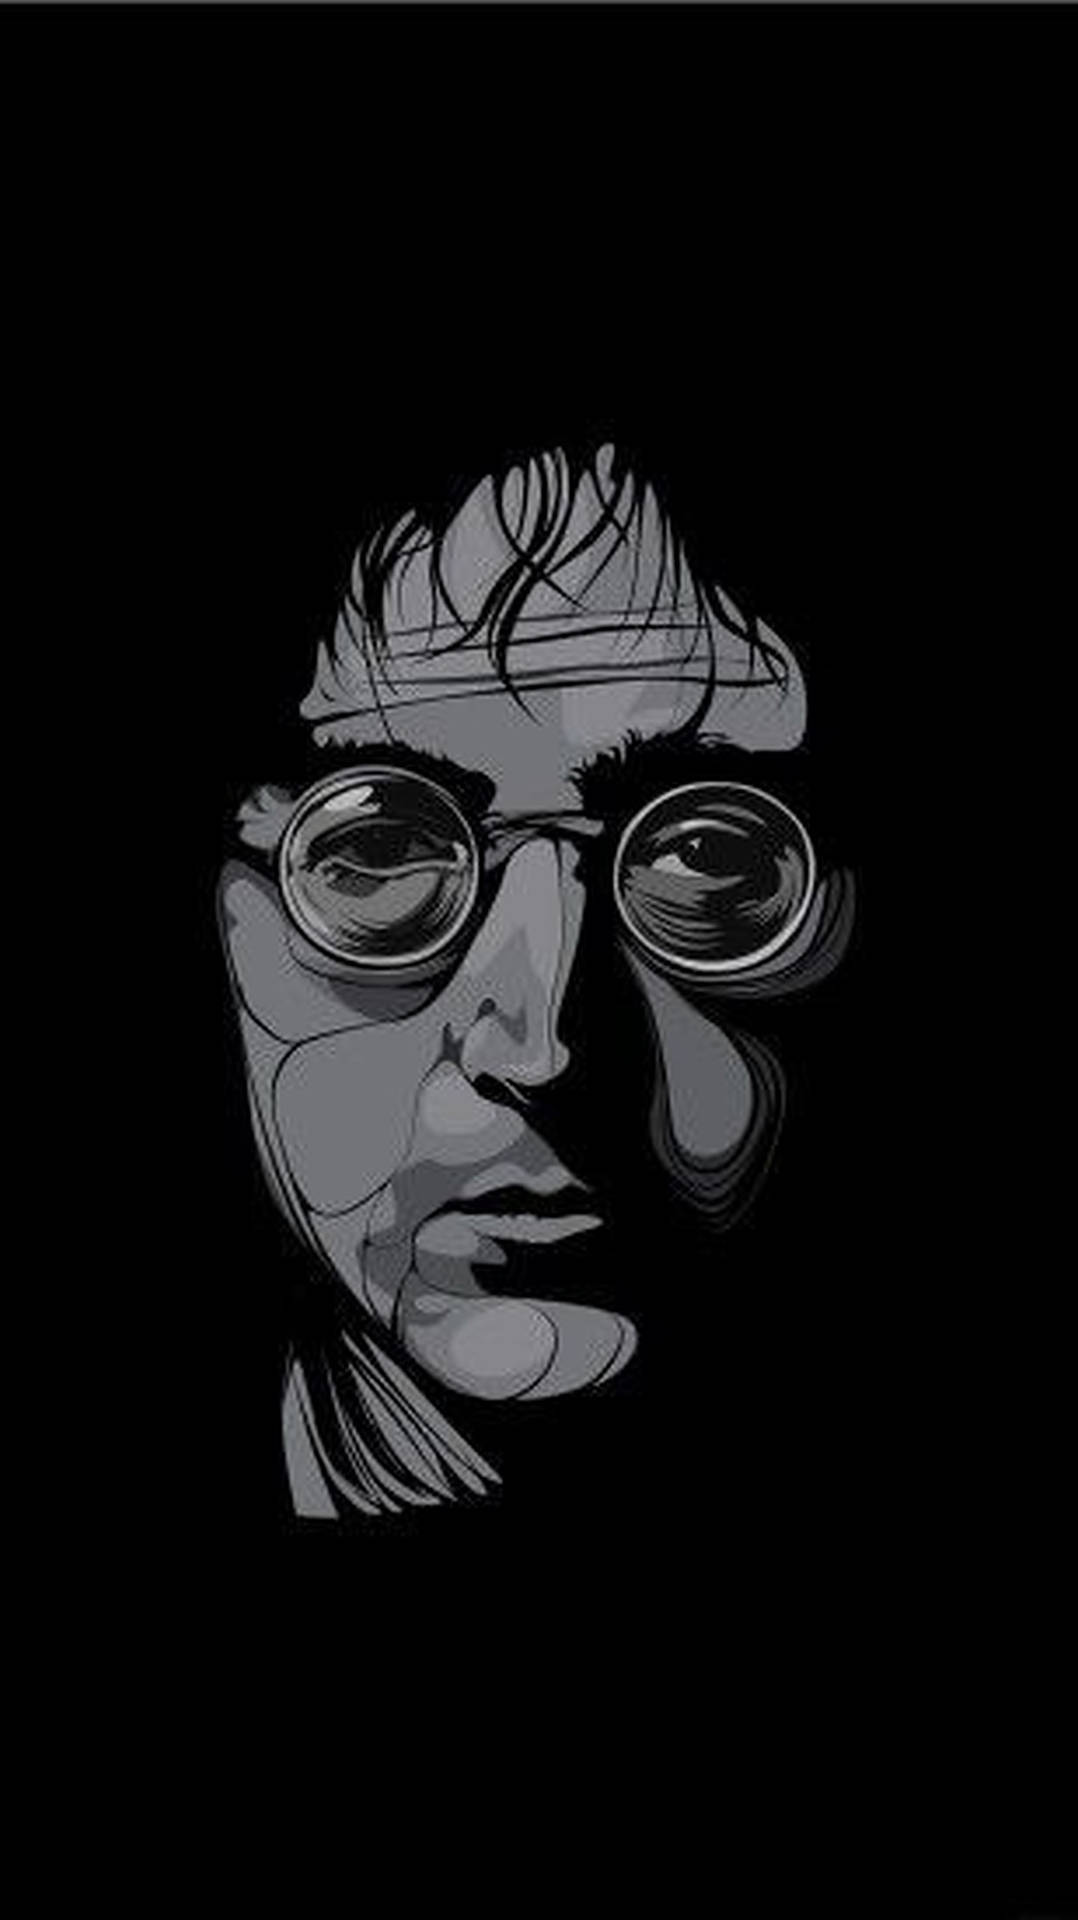 John Lennon Monochrome Art Wallpaper